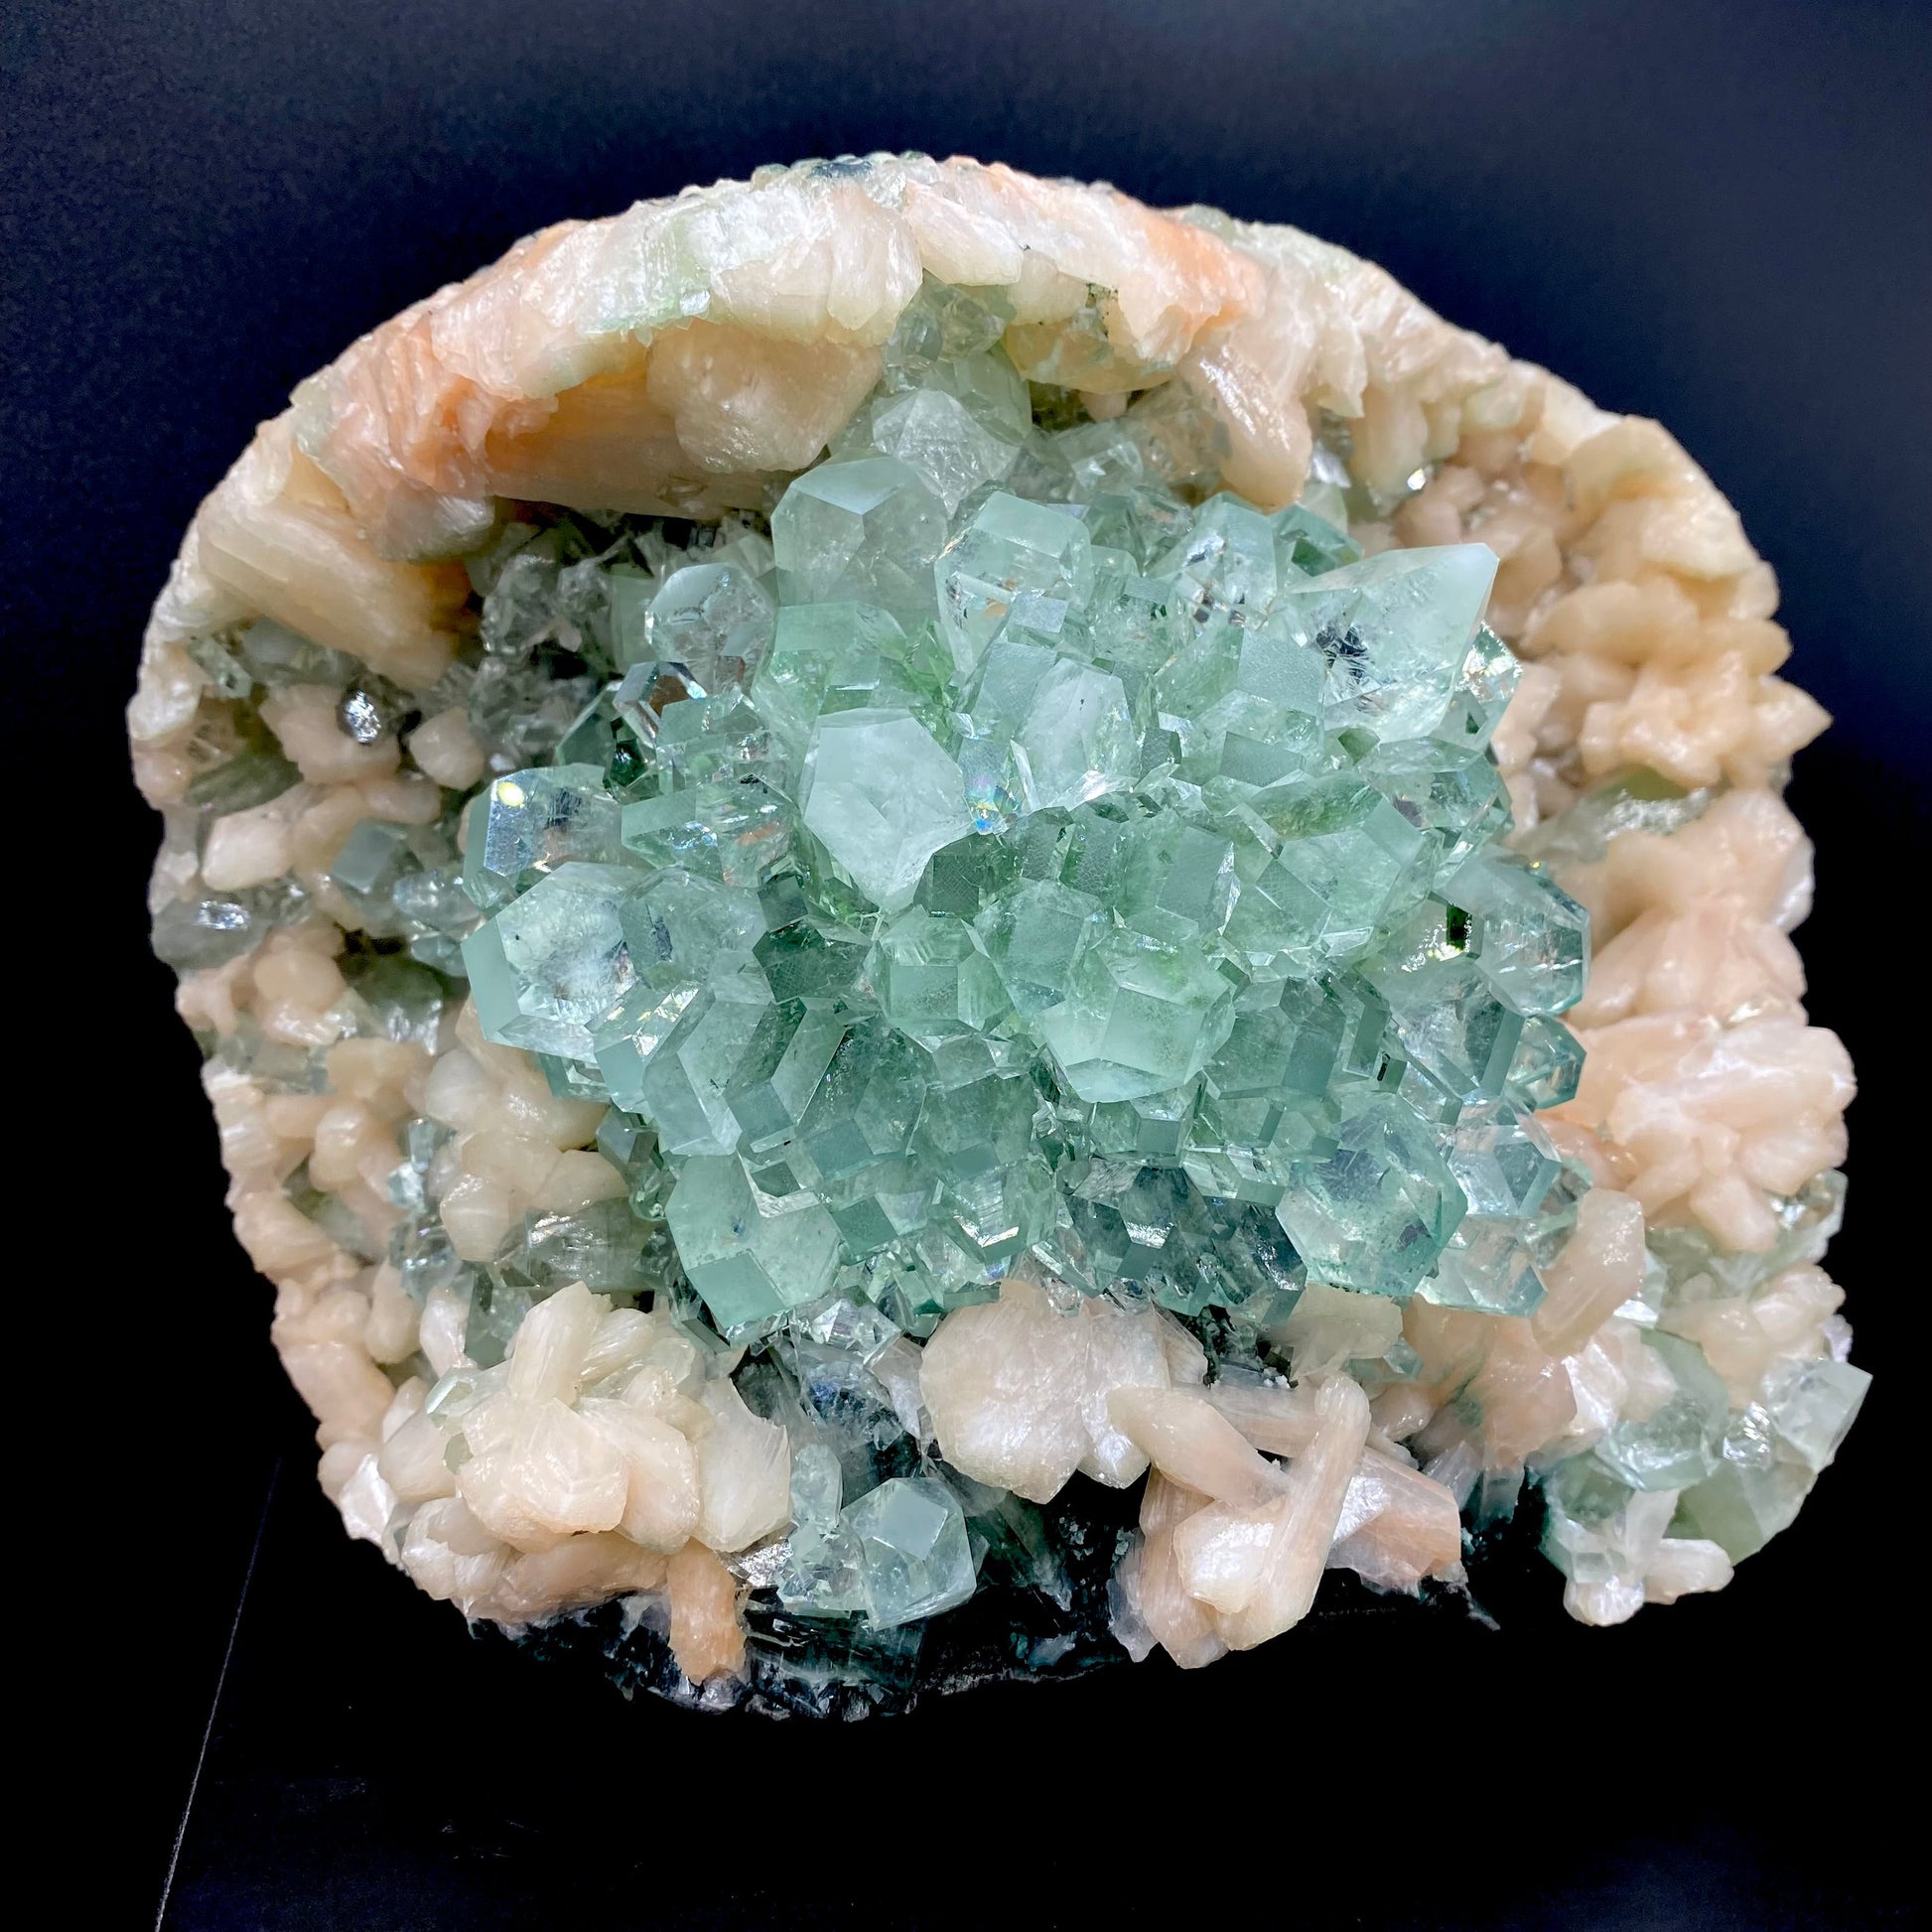 Apophyllite DK109 Superb Minerals 